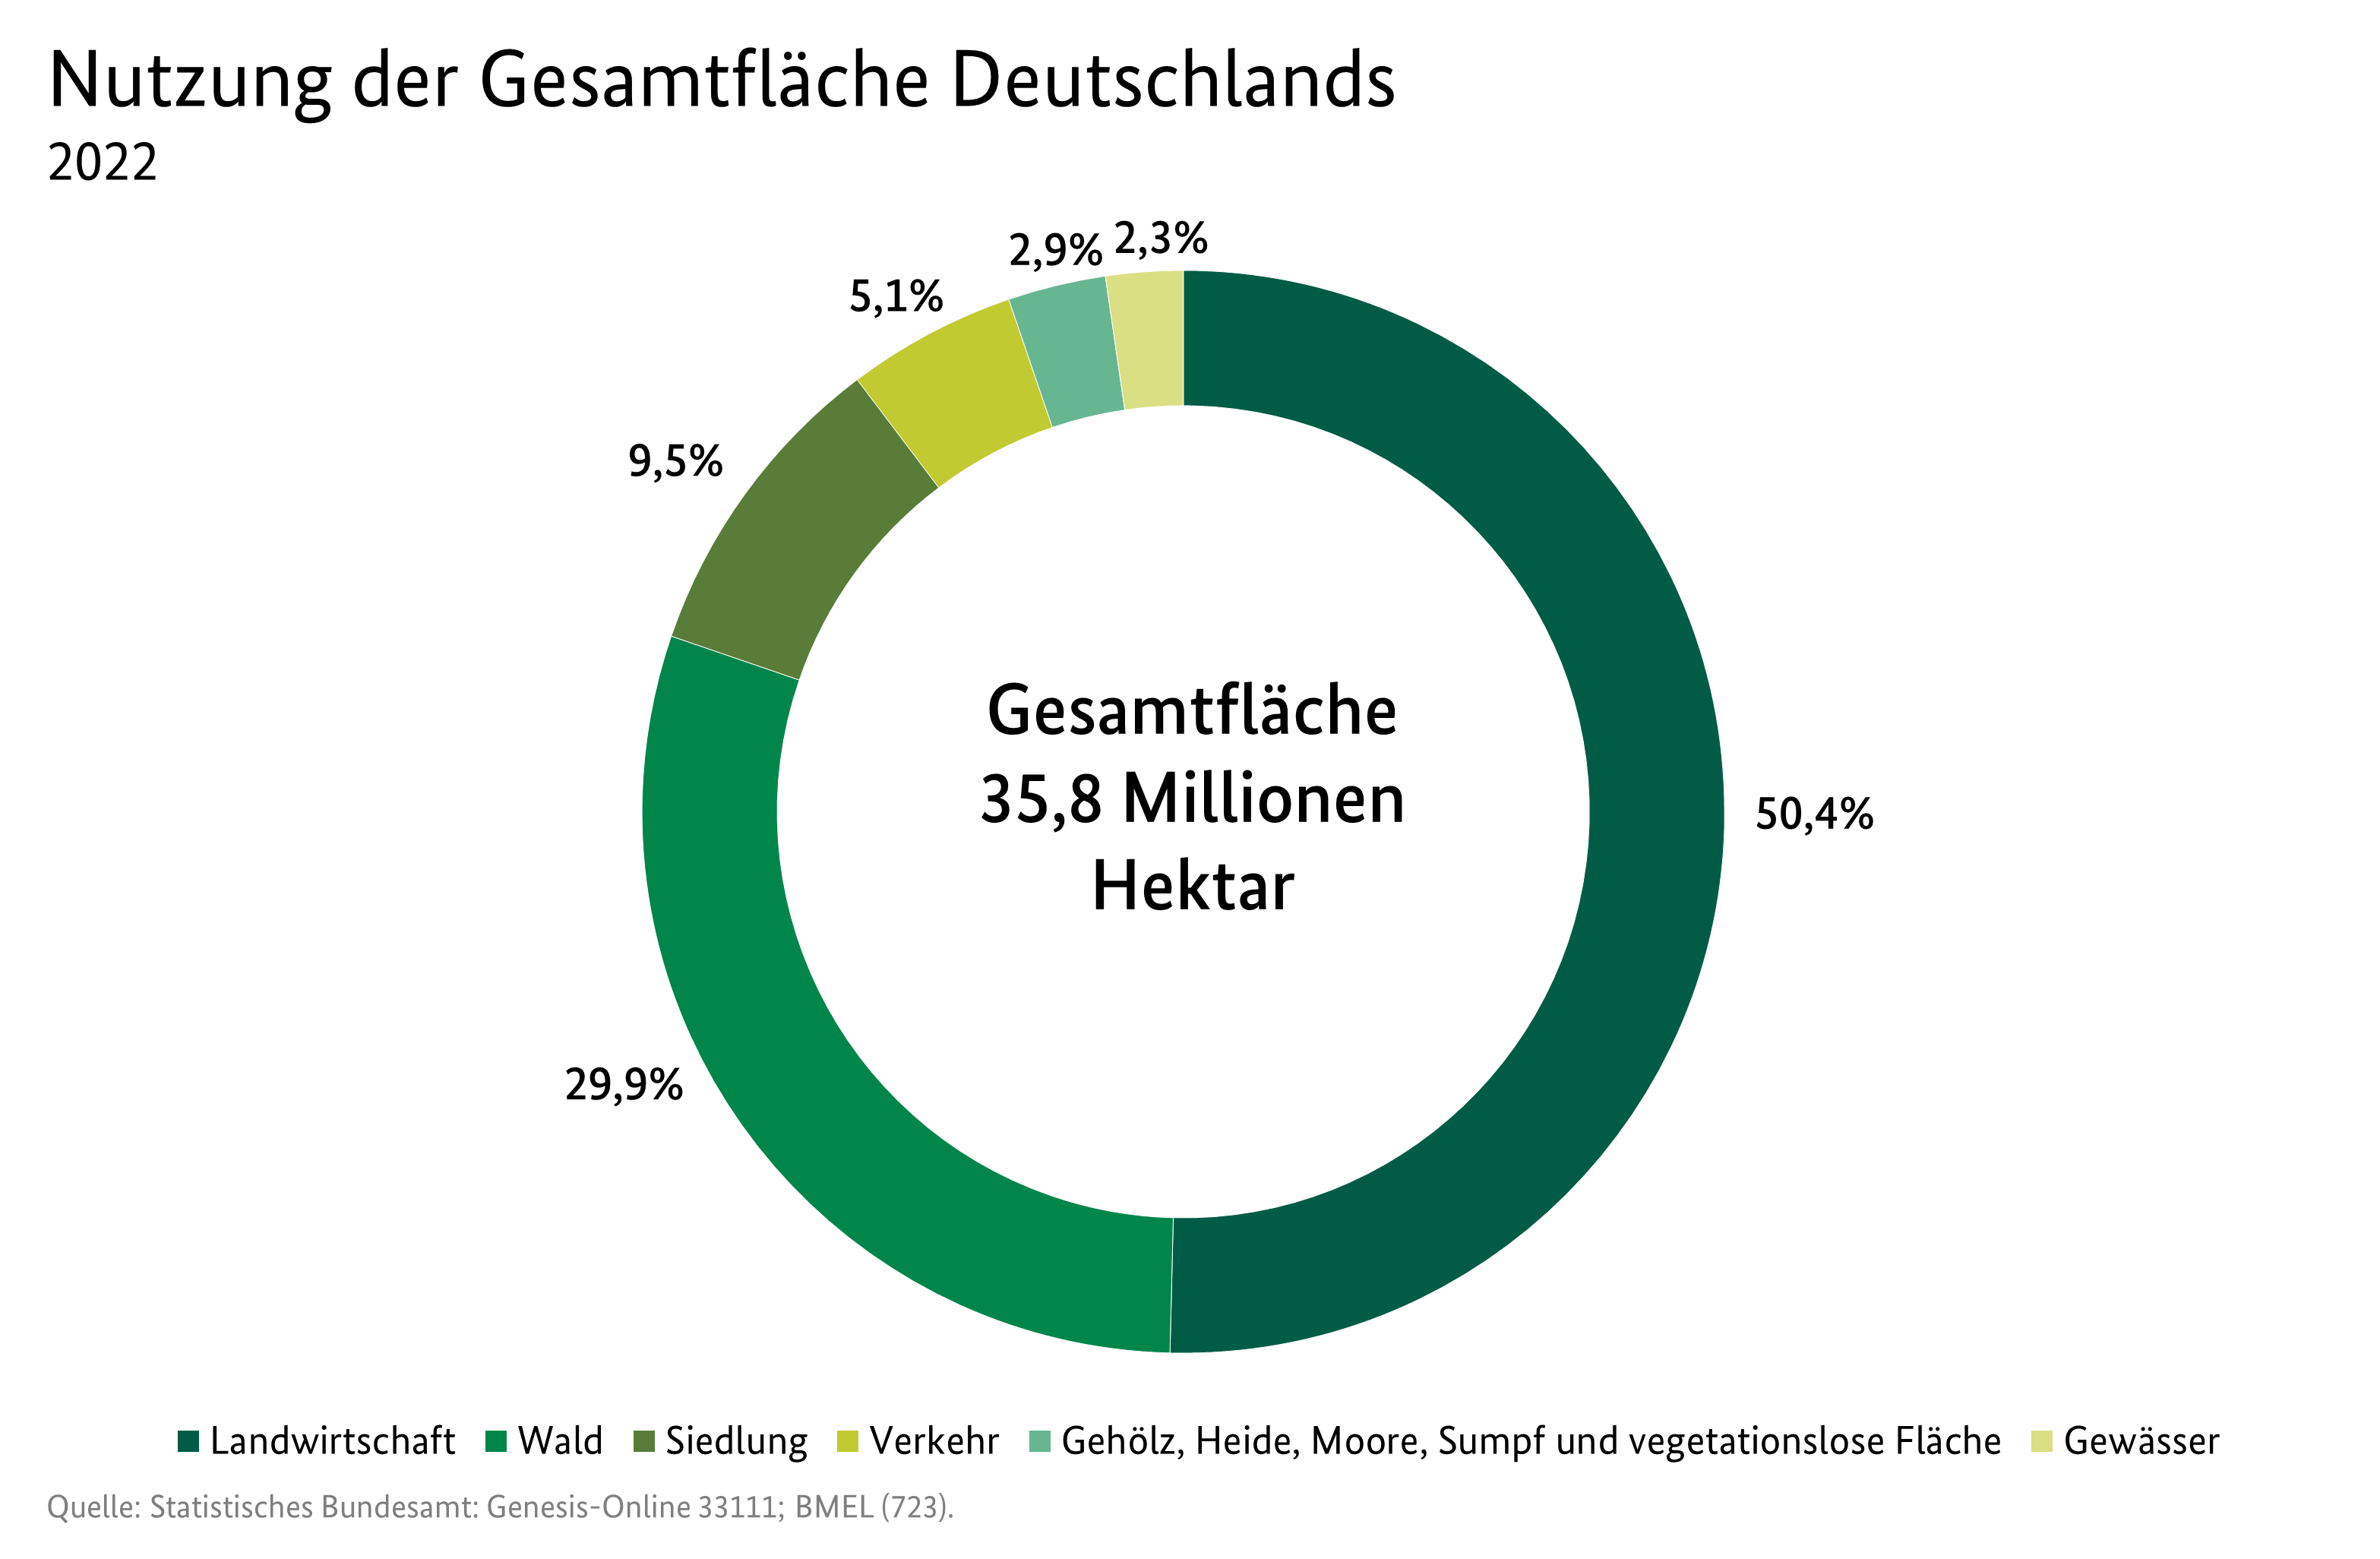 Kreisdiagramm: Nutzung der Gesamtfläche Deutschlands im Jahr 2021. Die Gesamtfläche Deutschlands beträgt 35,8 Millionen Hektar. Datenquelle ist die Tabelle SJT-3070200